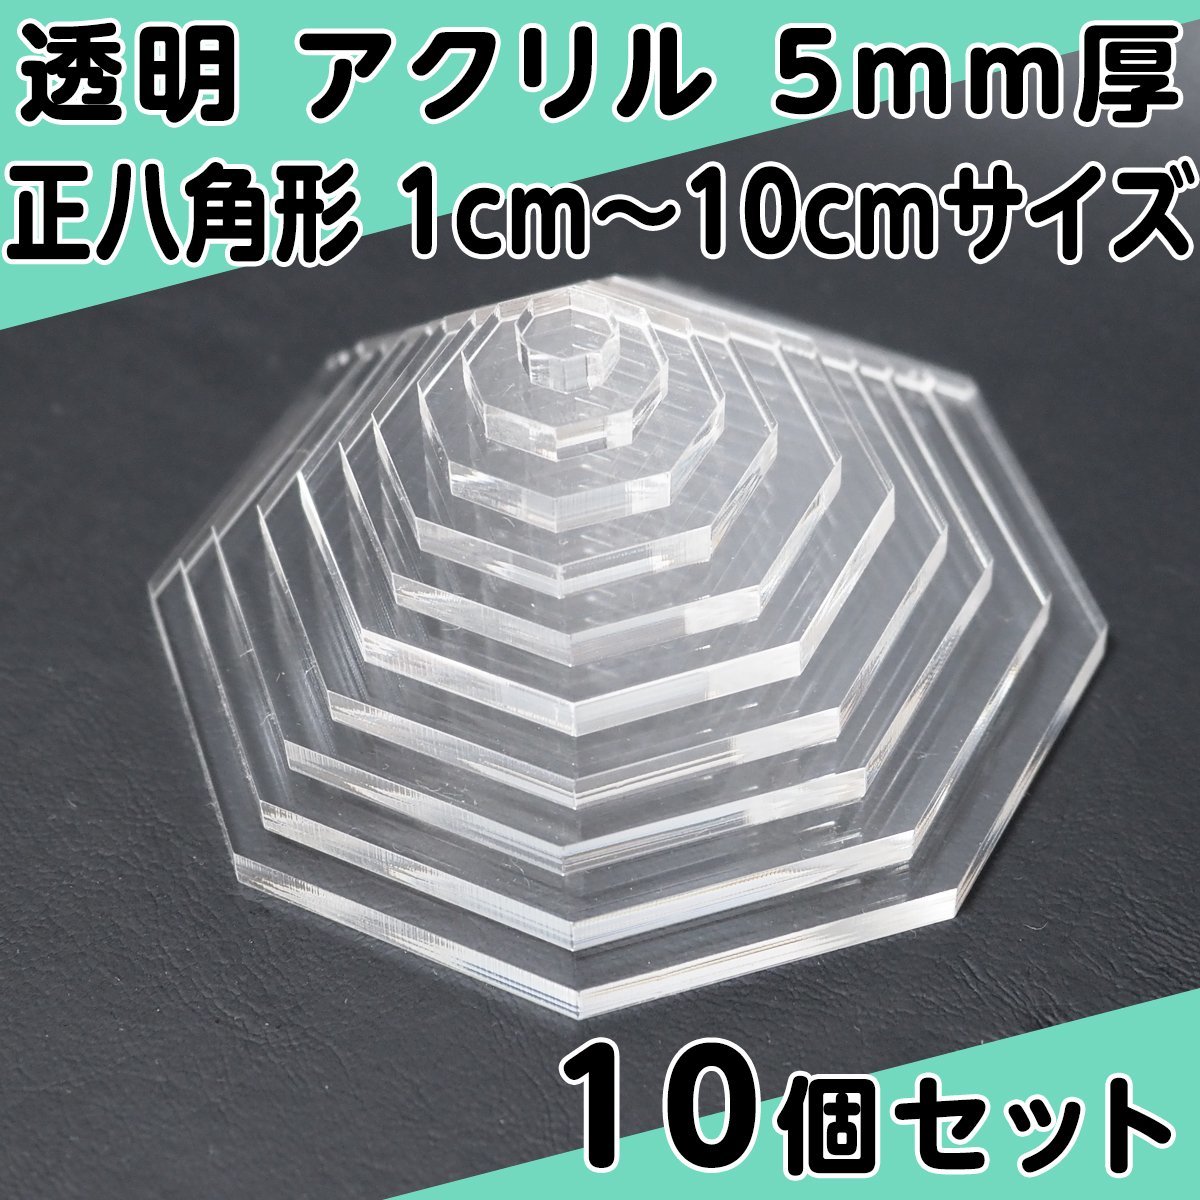 透明 アクリル 5mm厚 正八角形 1cm～10cmサイズ 1cm刻み 10個セット_画像1